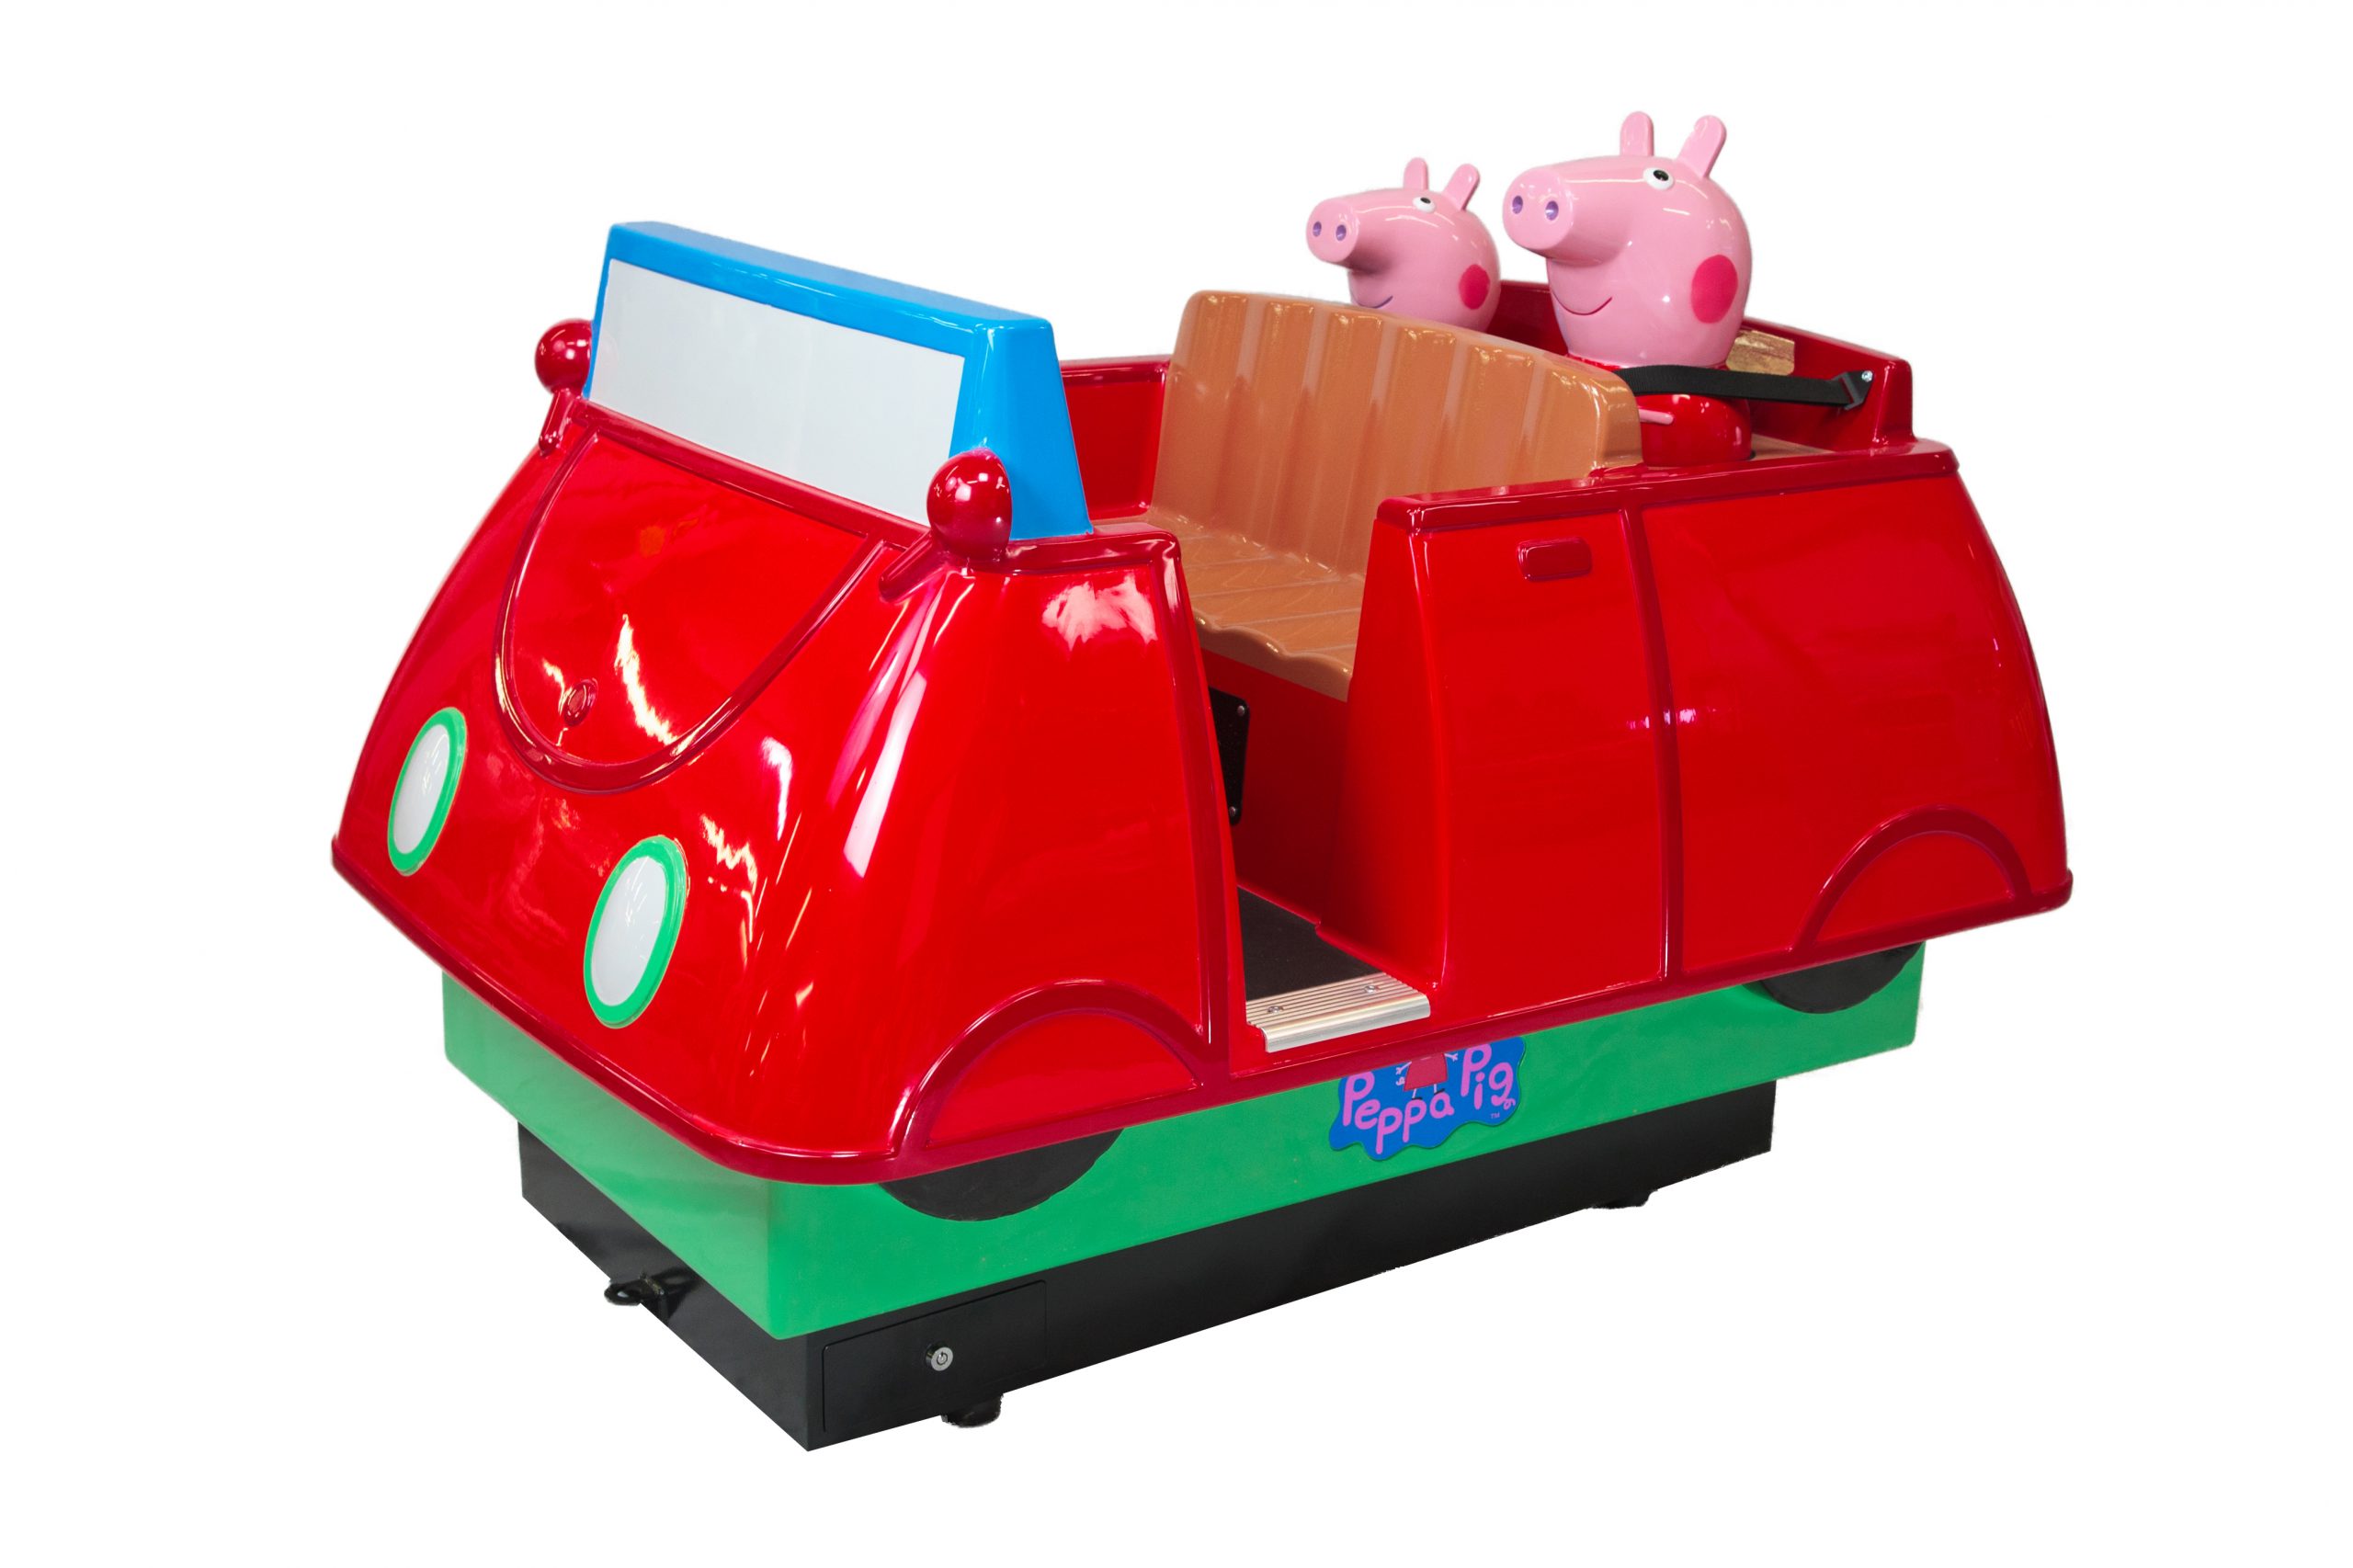 Daddy Pig's car